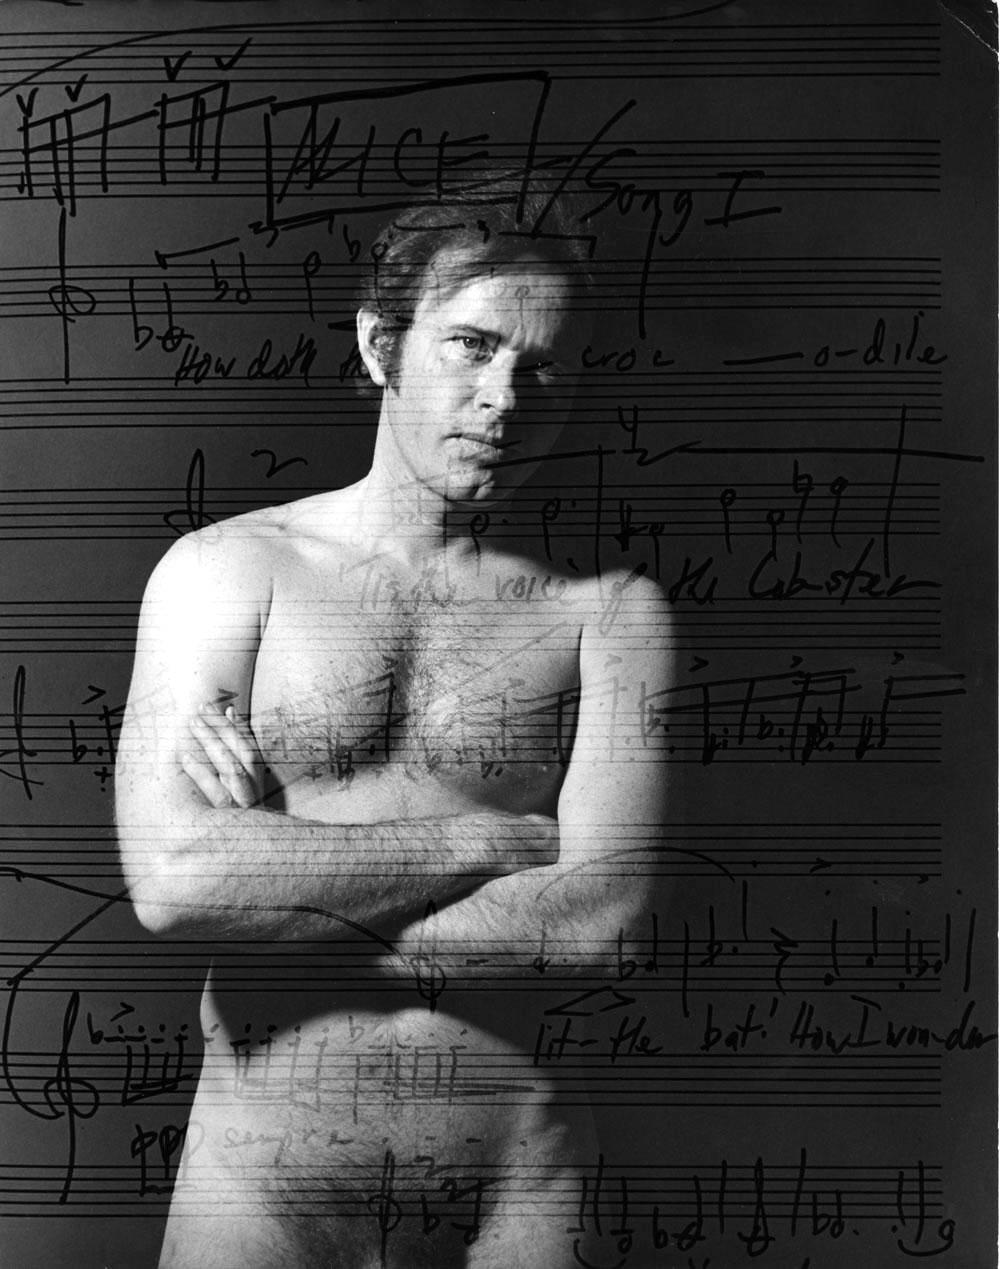 Jack Mitchell Nude Photograph – Der amerikanische Komponist David Del Tredici, in mehreren exposures nackt mit seiner Musik.